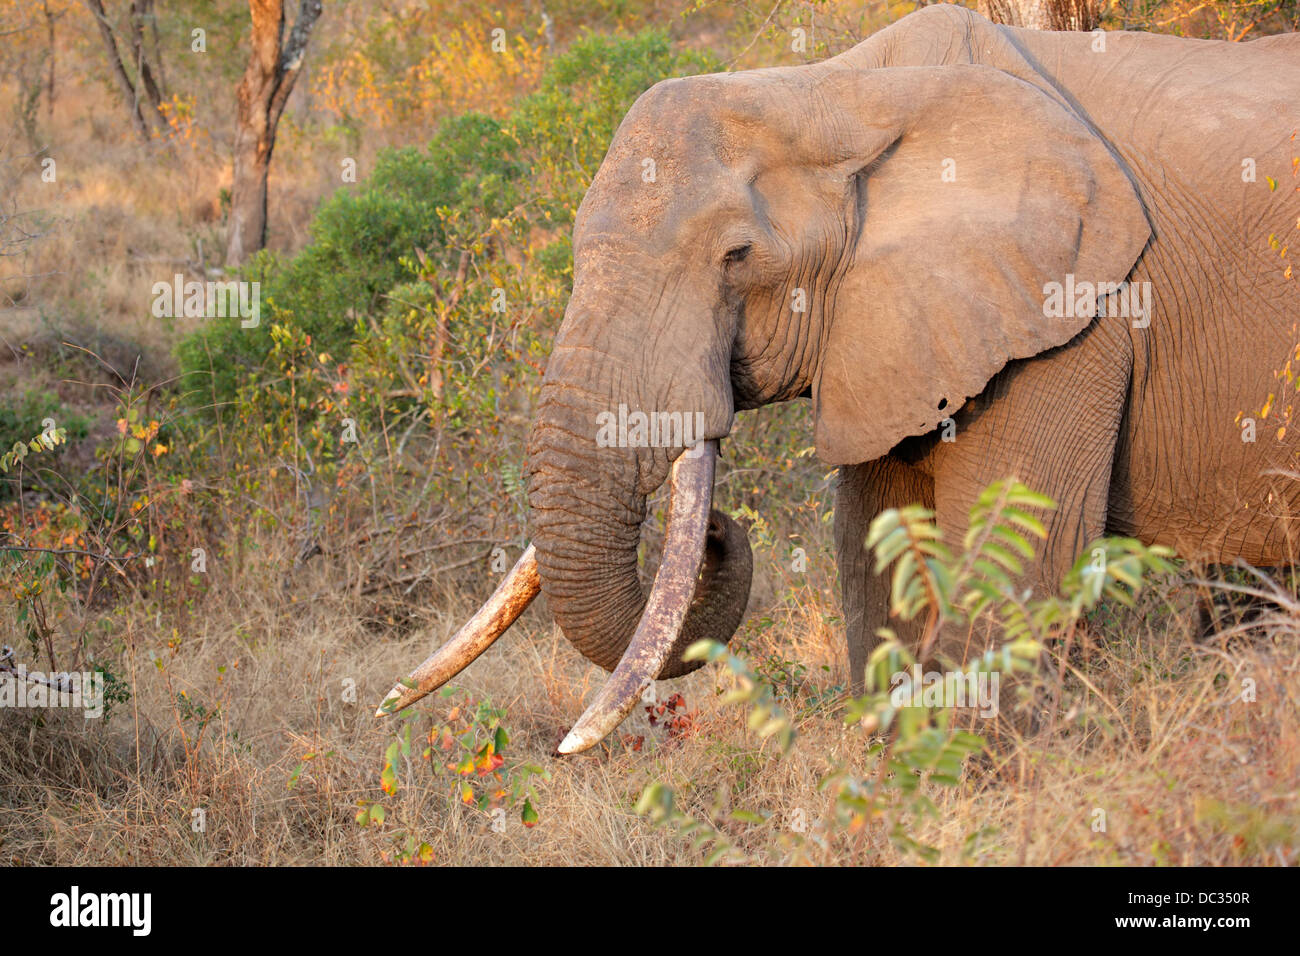 Bull d'Afrique elephant (Loxodonta africana) avec de grandes défenses, Sabie-Sand nature reserve, Afrique du Sud Banque D'Images